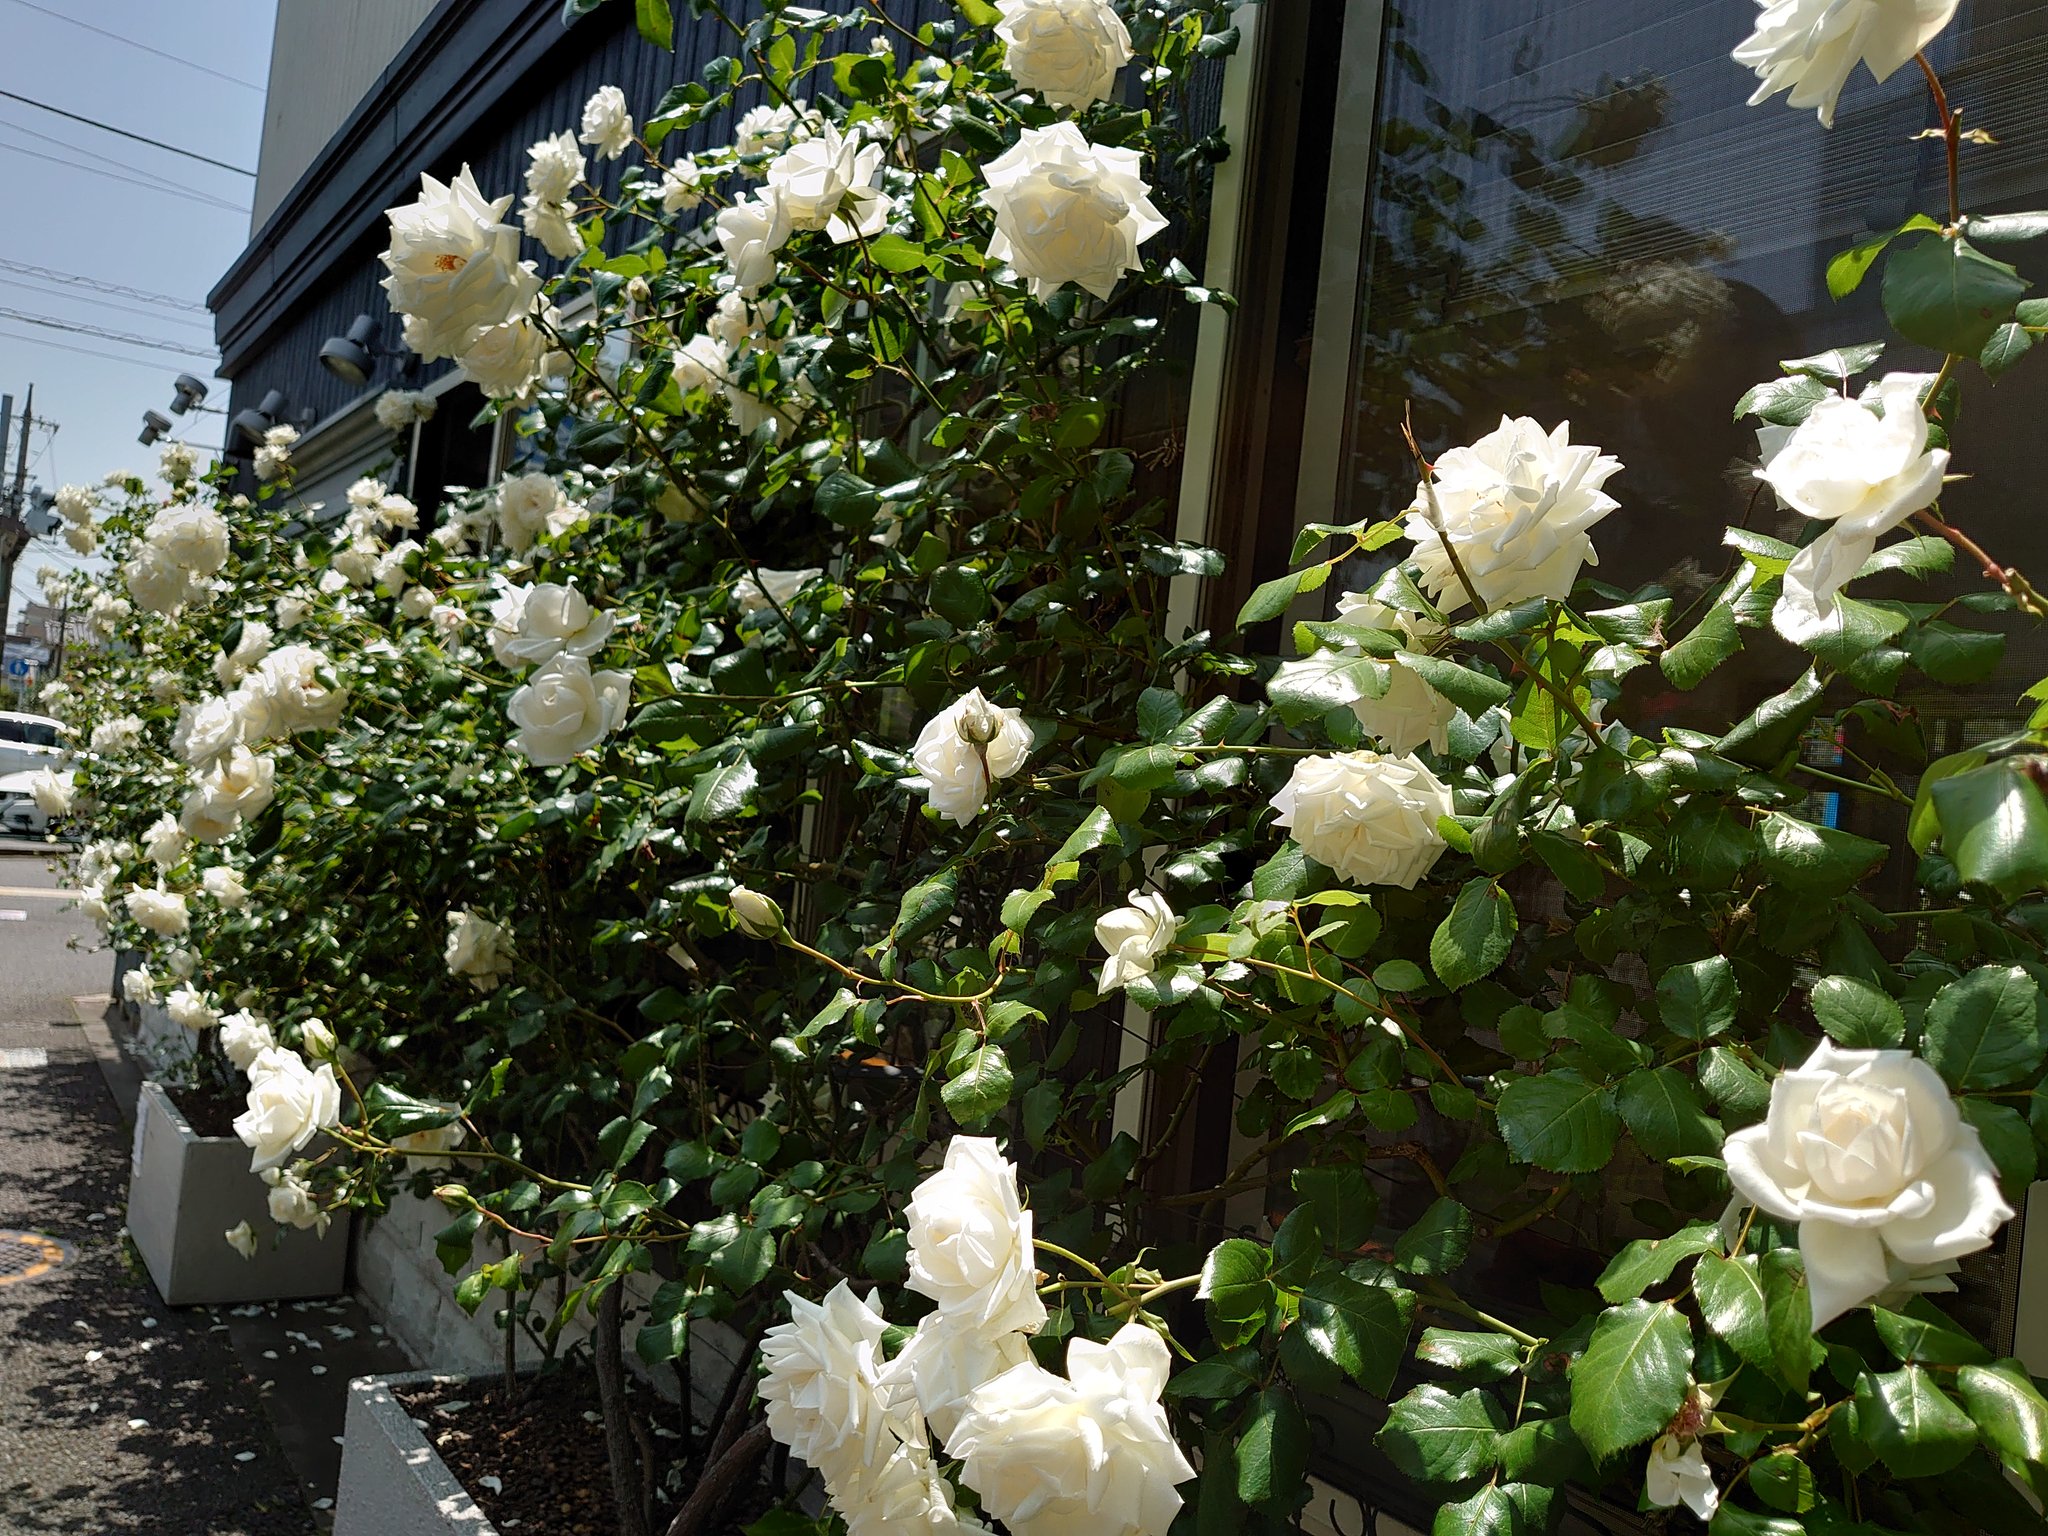 石川 晃 いい天気ですね 長年お世話になっている美容室 今年も白いバラが綺麗に咲いています T Co A6xchisa Twitter